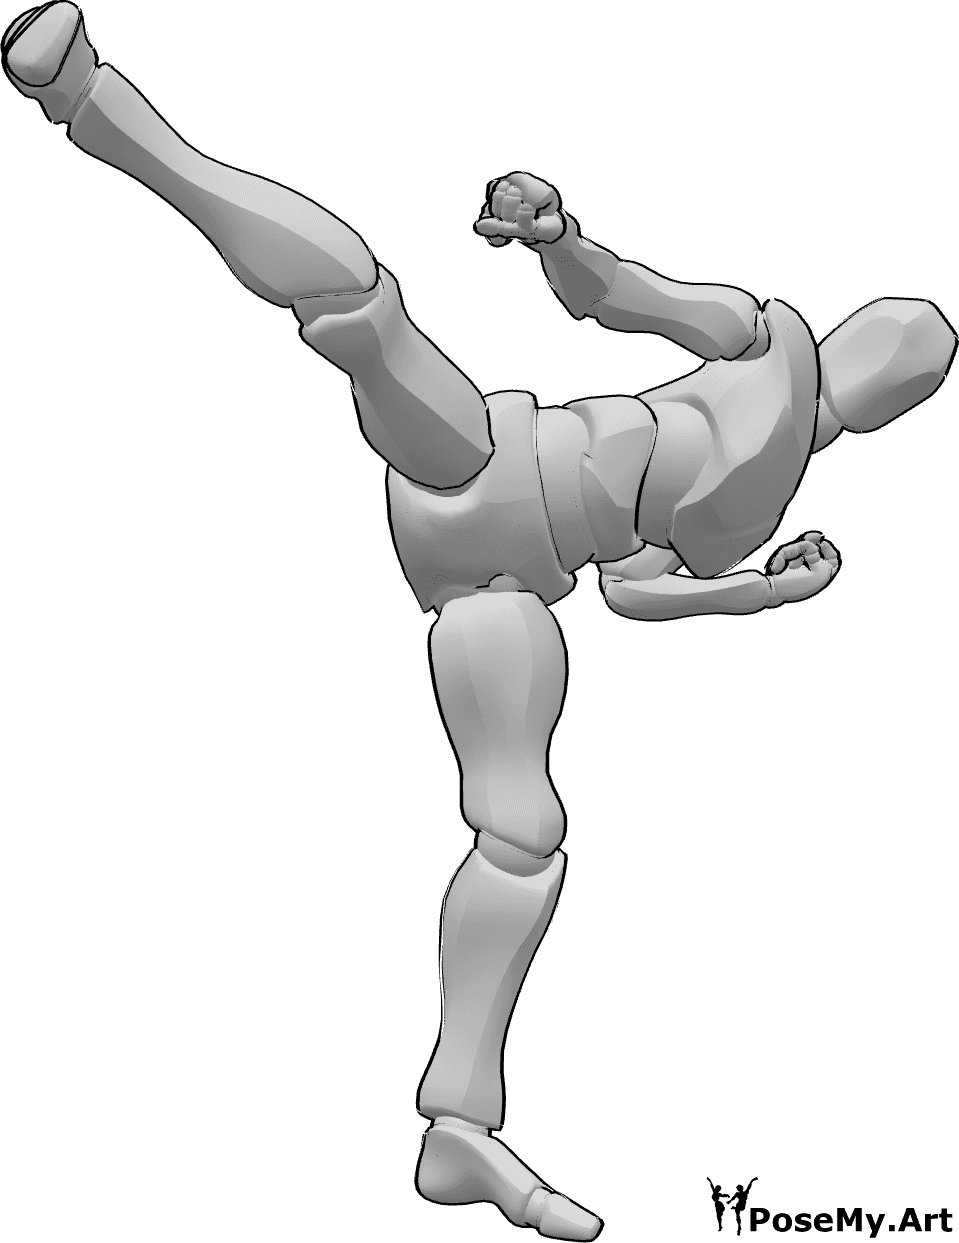 crane in martial arts pose - Google Search | Martial arts, Kung fu martial  arts, Kung fu